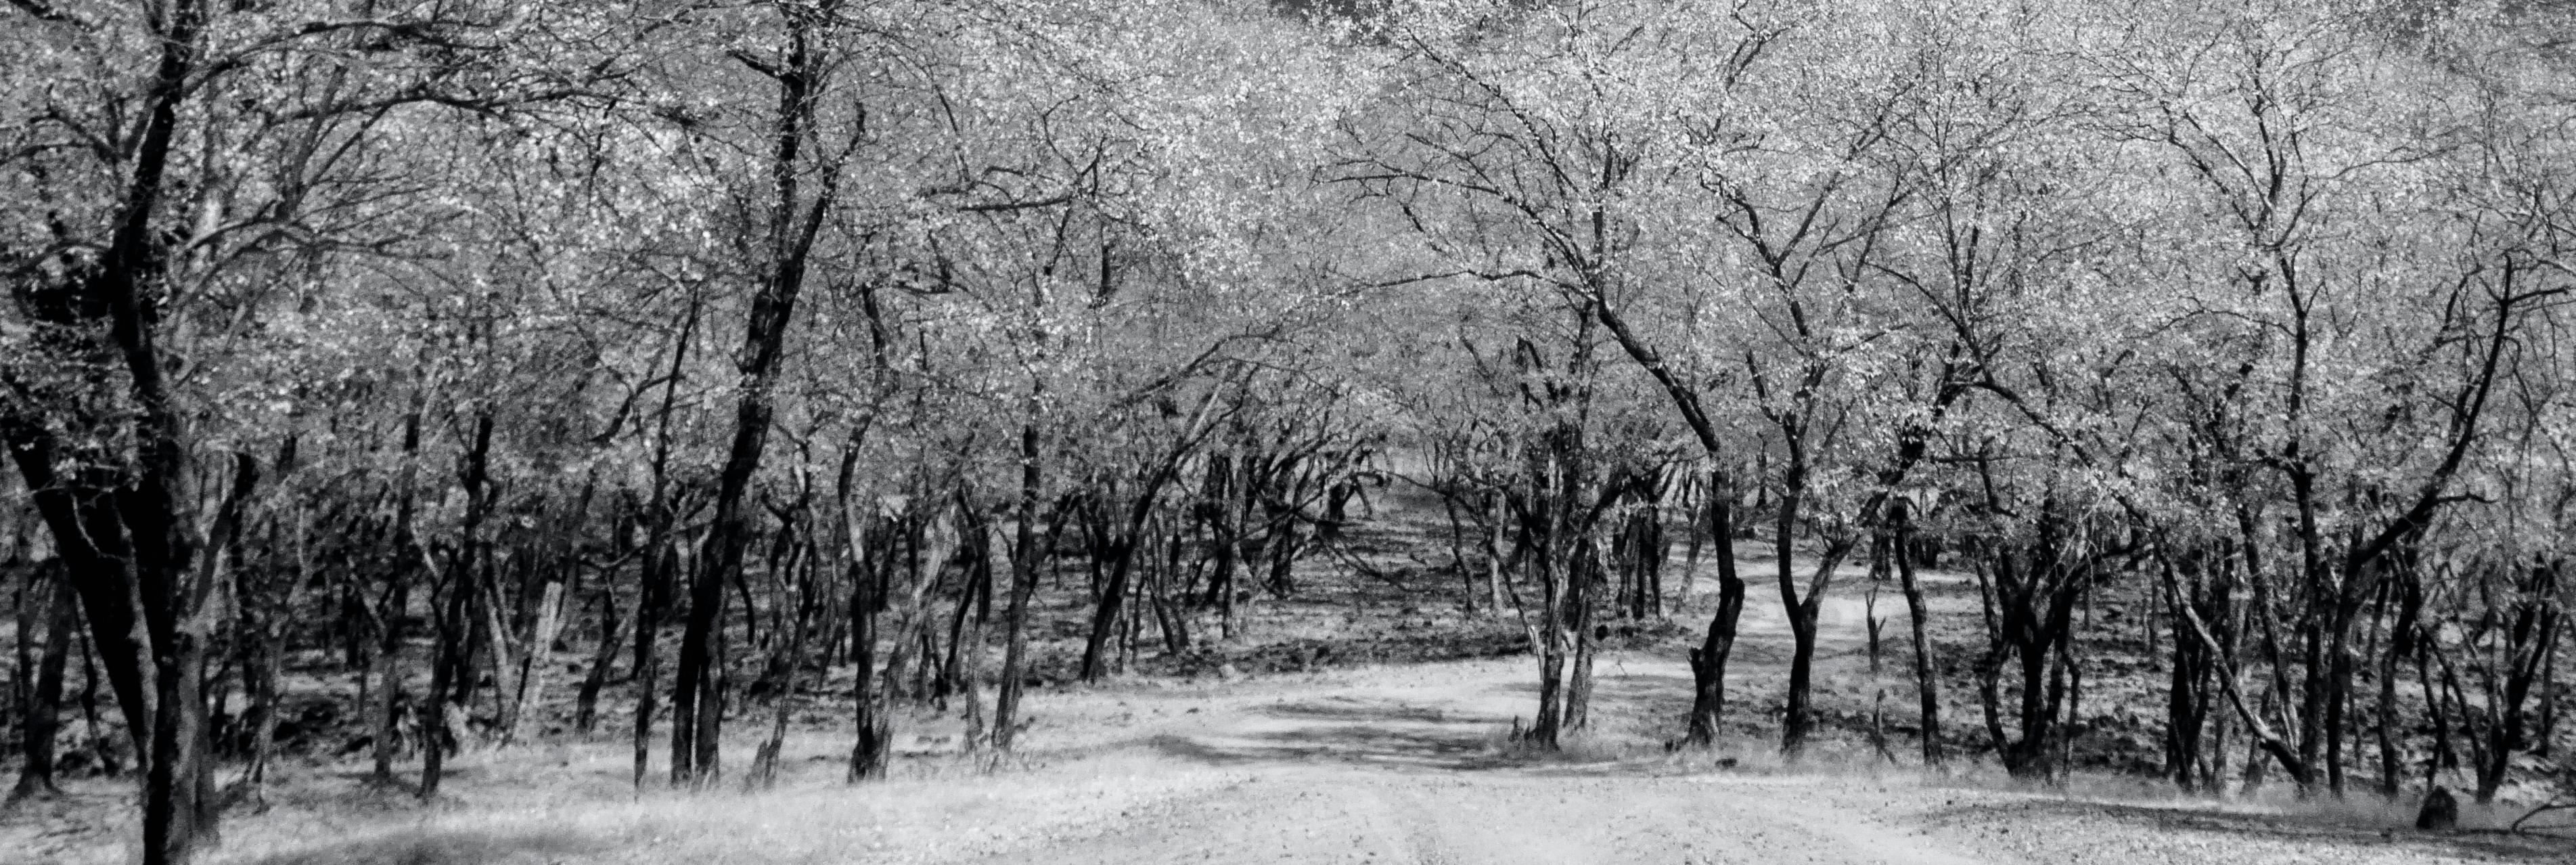 Photographie de paysage surréaliste en noir et blanc - Nature - Oiseaux sauvages - arbres de l'Inde en vente 2